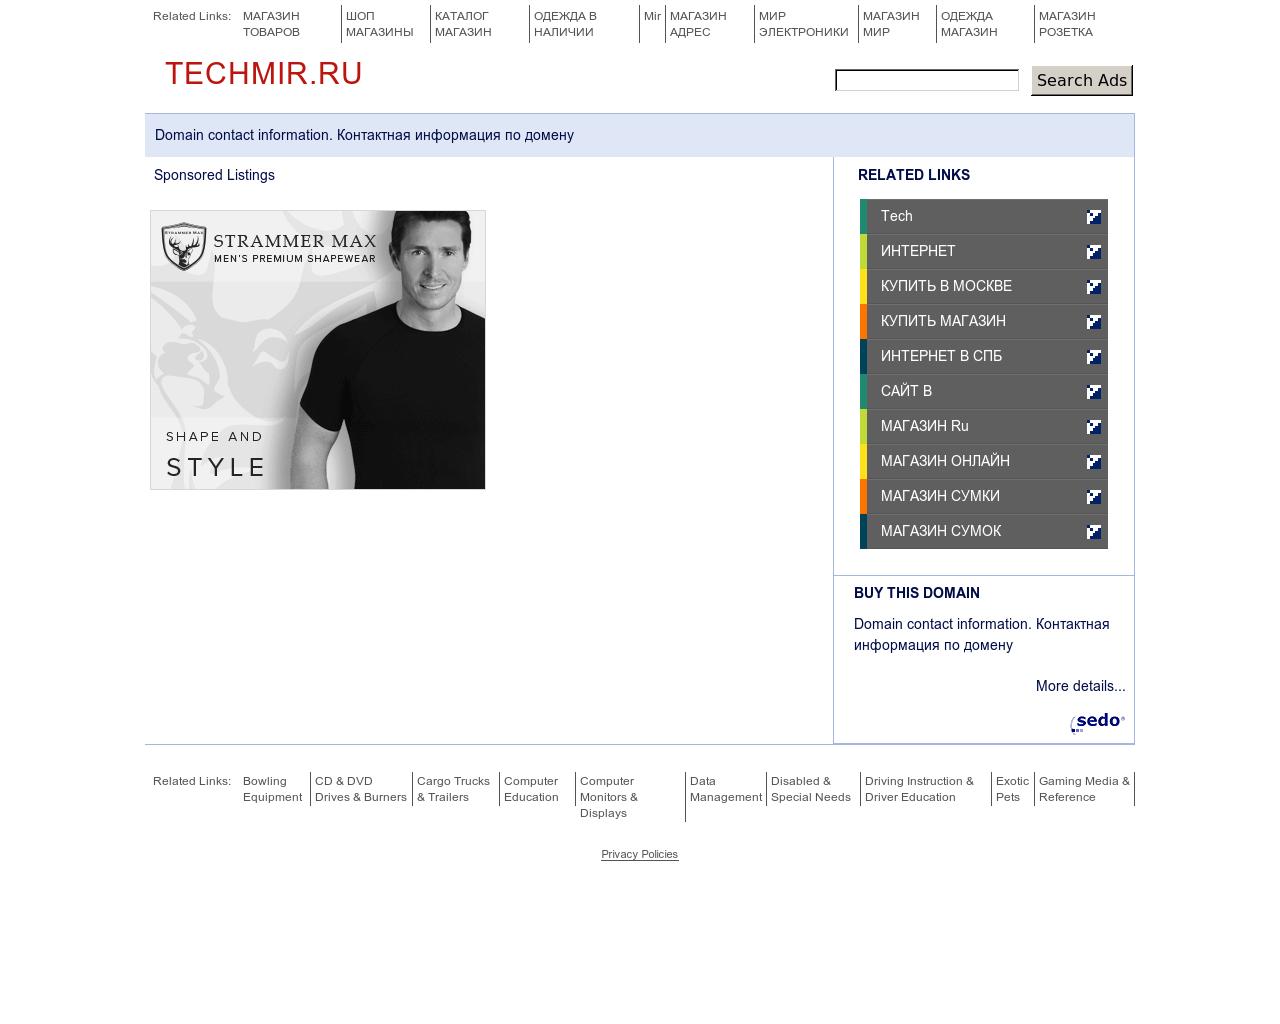 Изображение сайта techmir.ru в разрешении 1280x1024